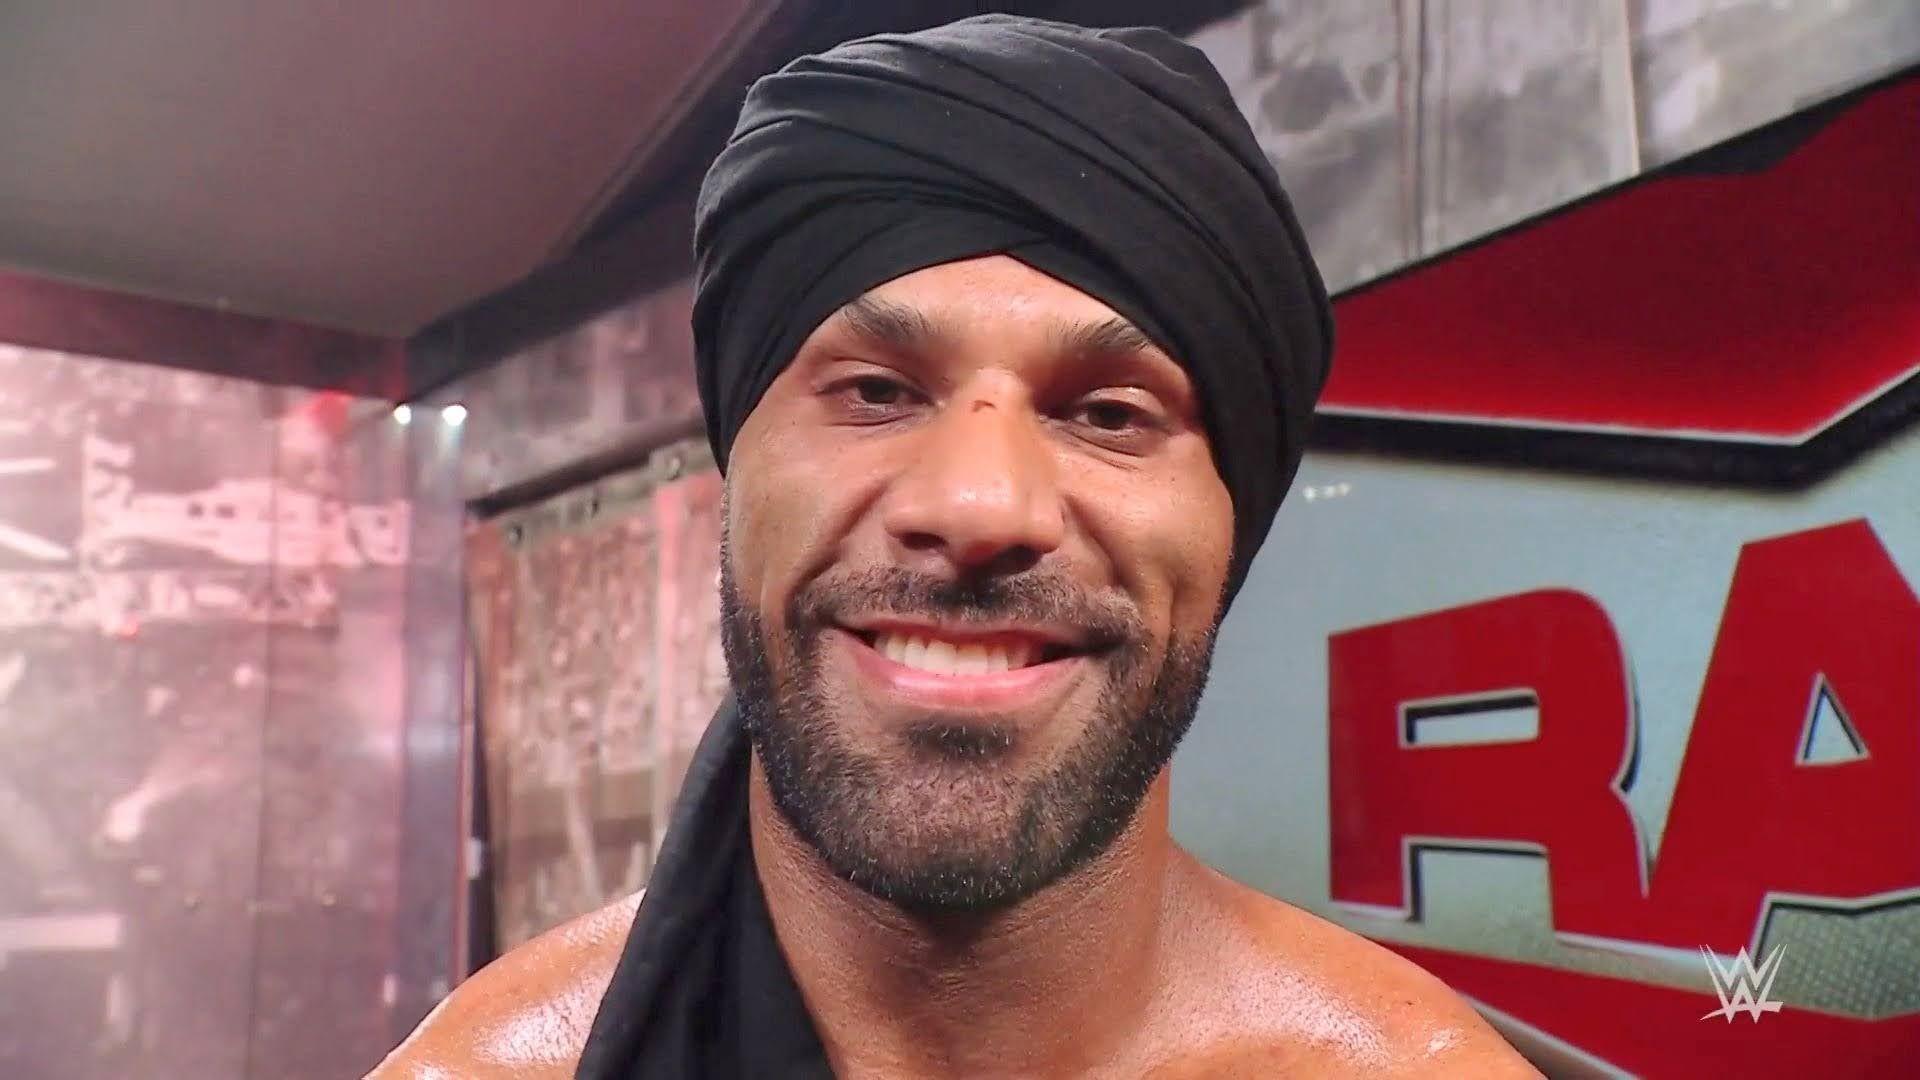 WWE RAW Superstar Jinder Mahal